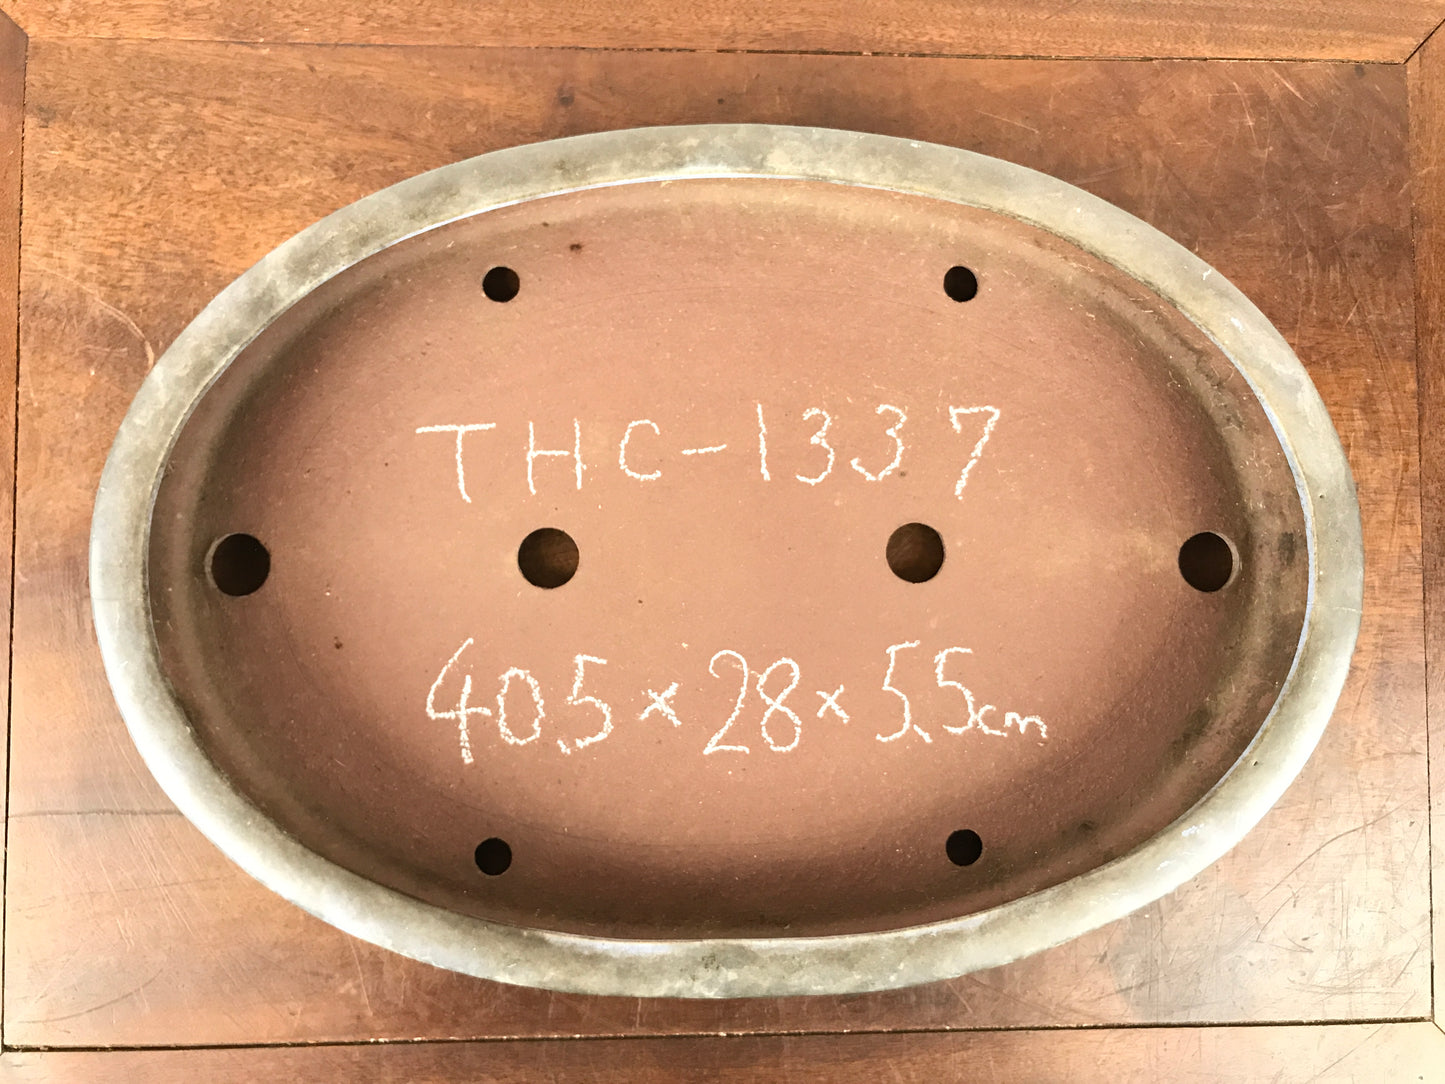 Yamaaki oval #THC-1337